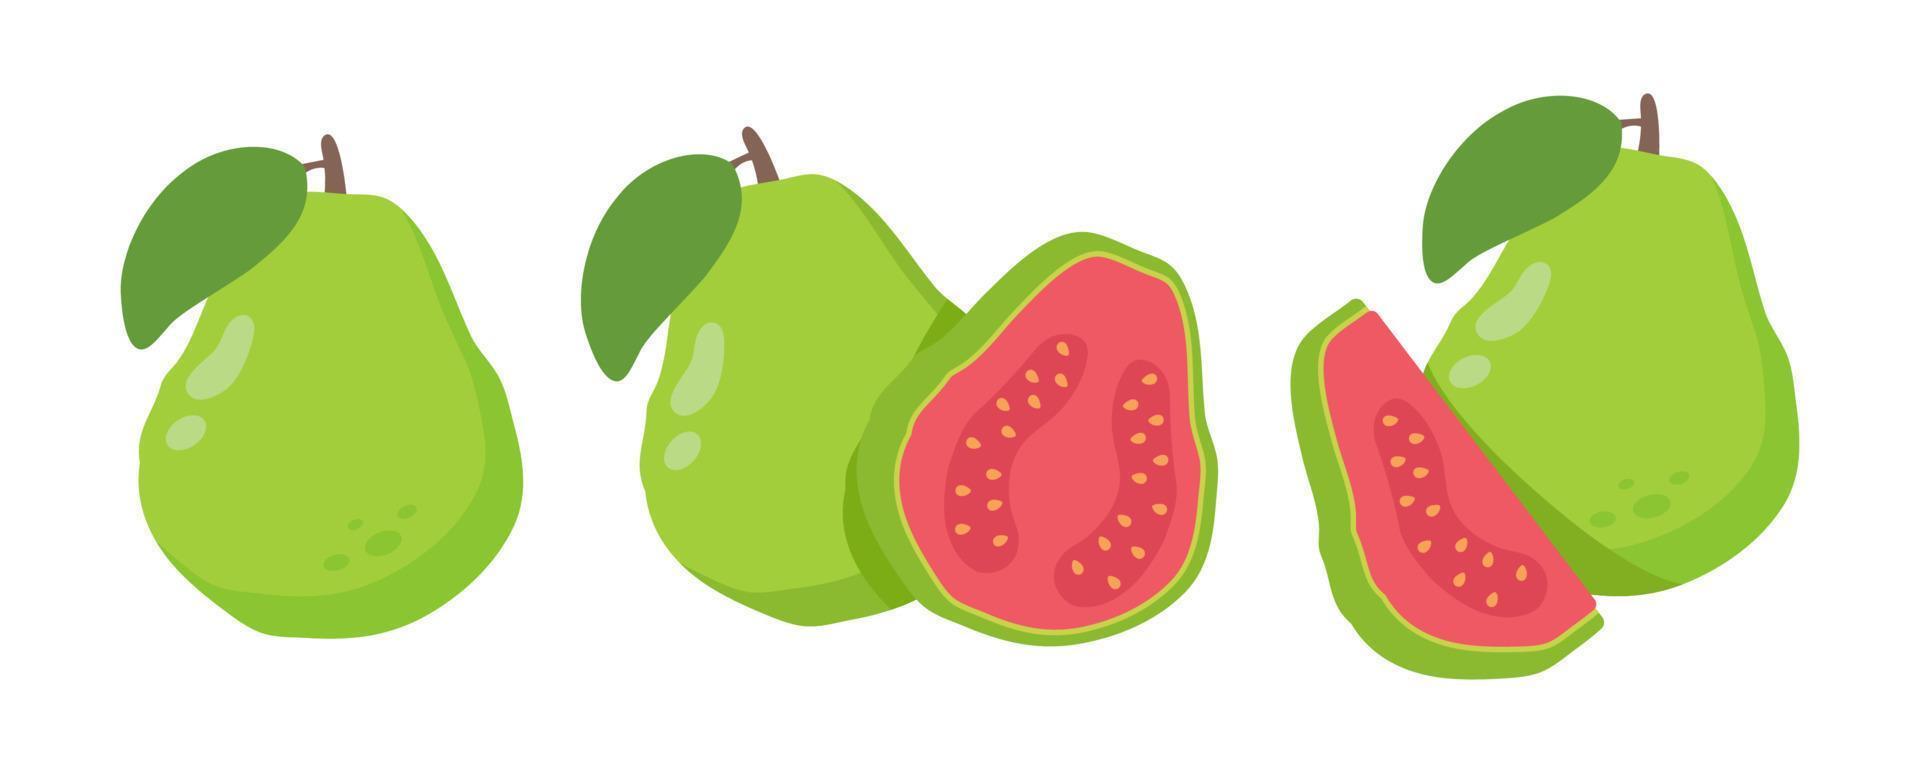 grüne guave süße frucht mit hohem vitamin c für die gesundheit für vegetarier. vektor